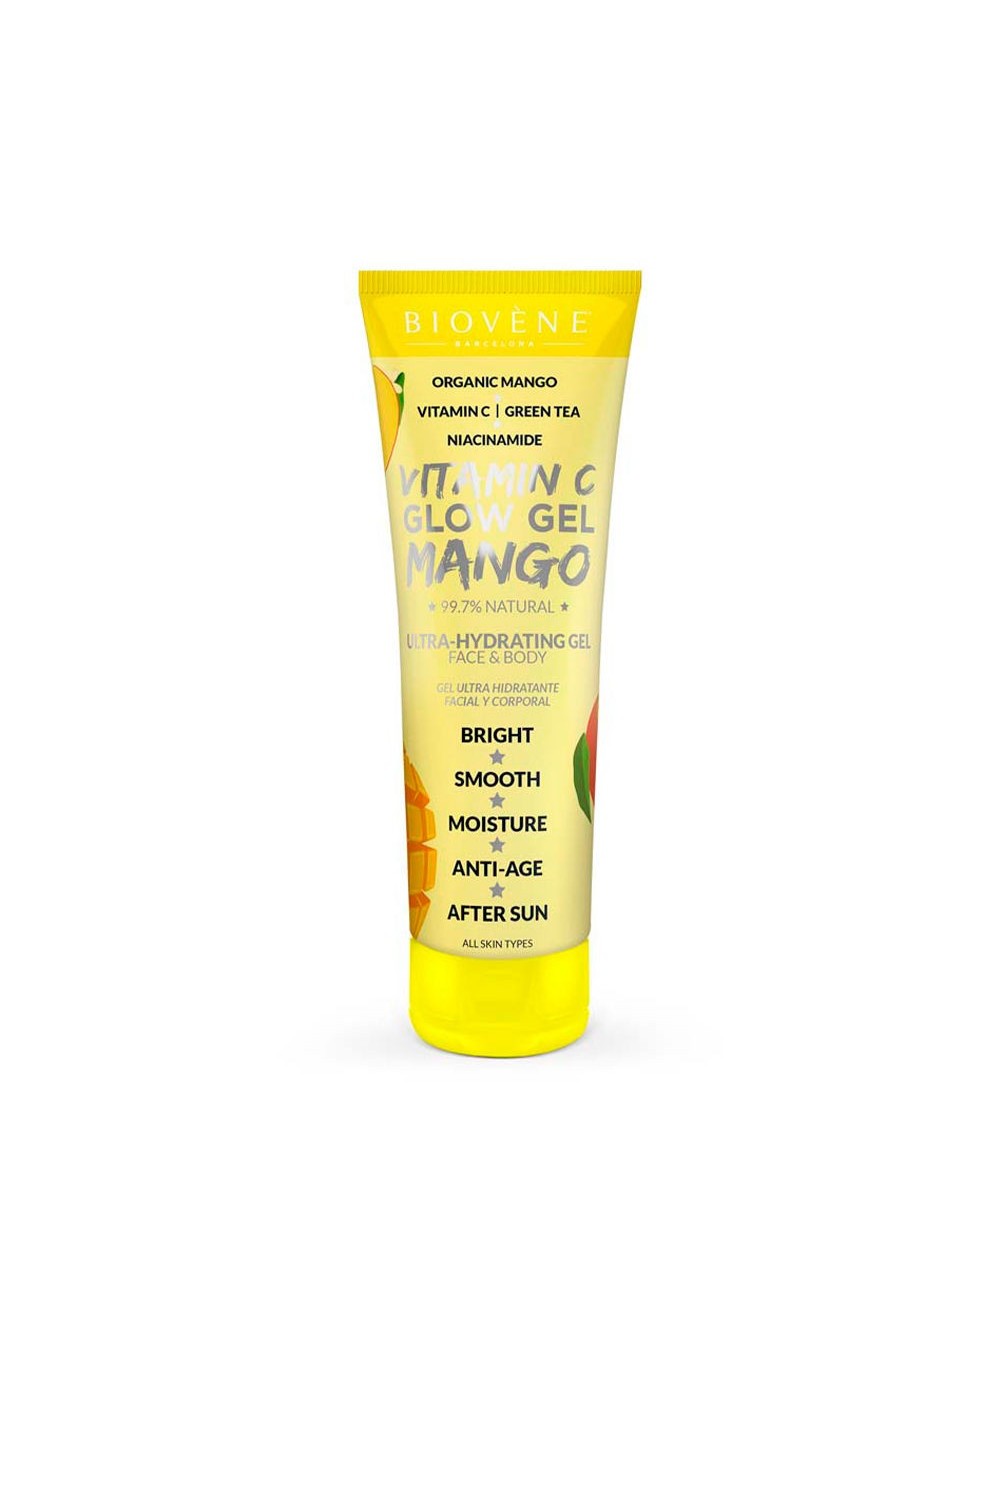 Biovene Vitamin C Glow Gel Mango Ultra-Hydrating Gel Face y Body 200ml